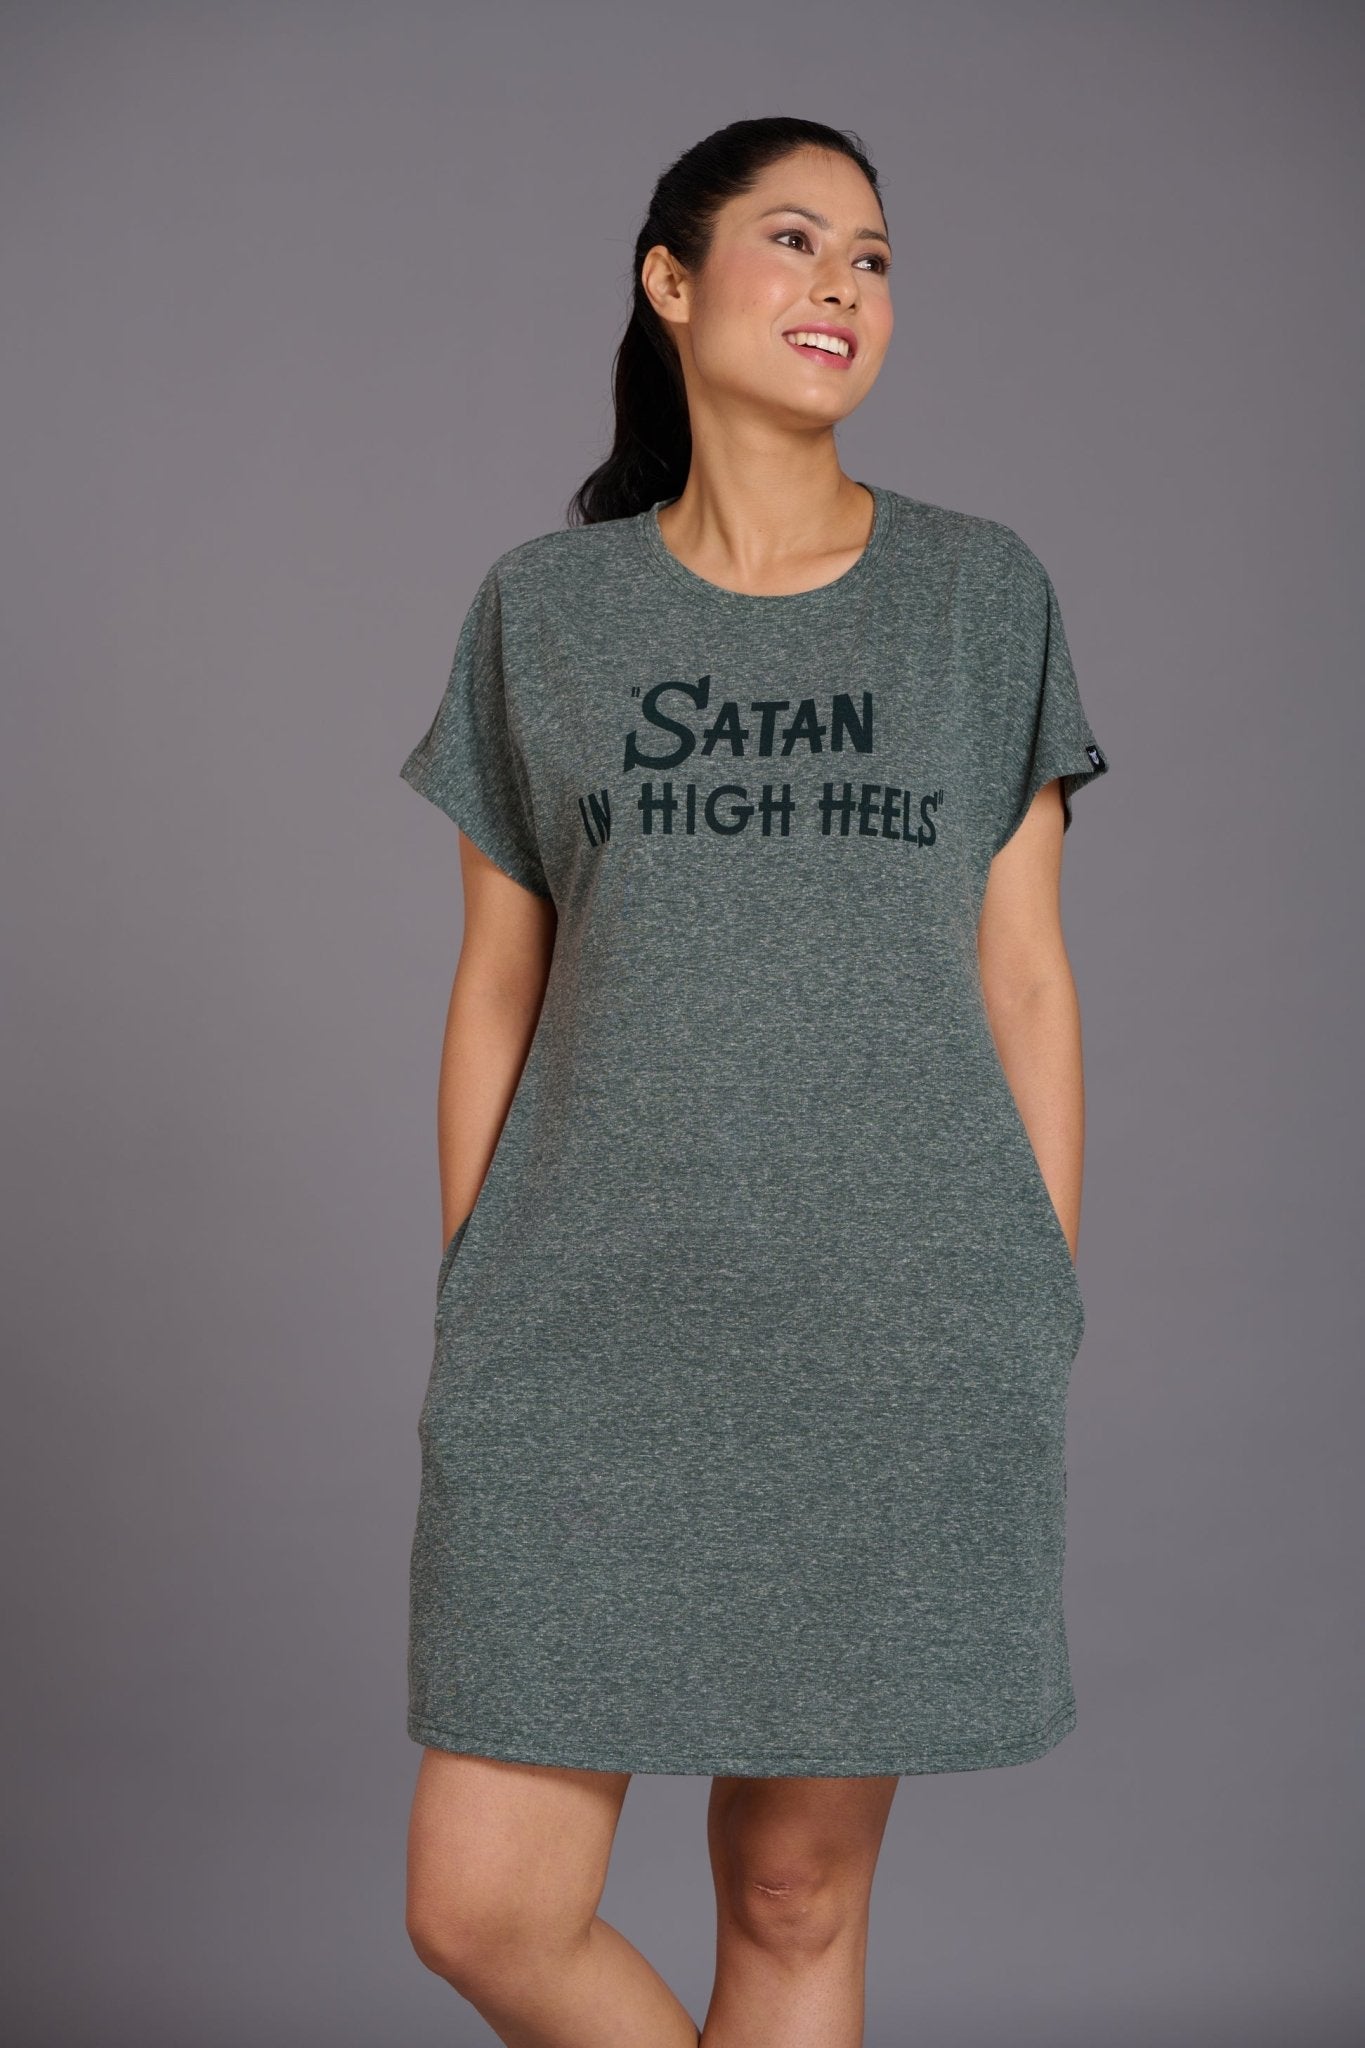 Satan in High Heel Green Dress for Women - Go Devil